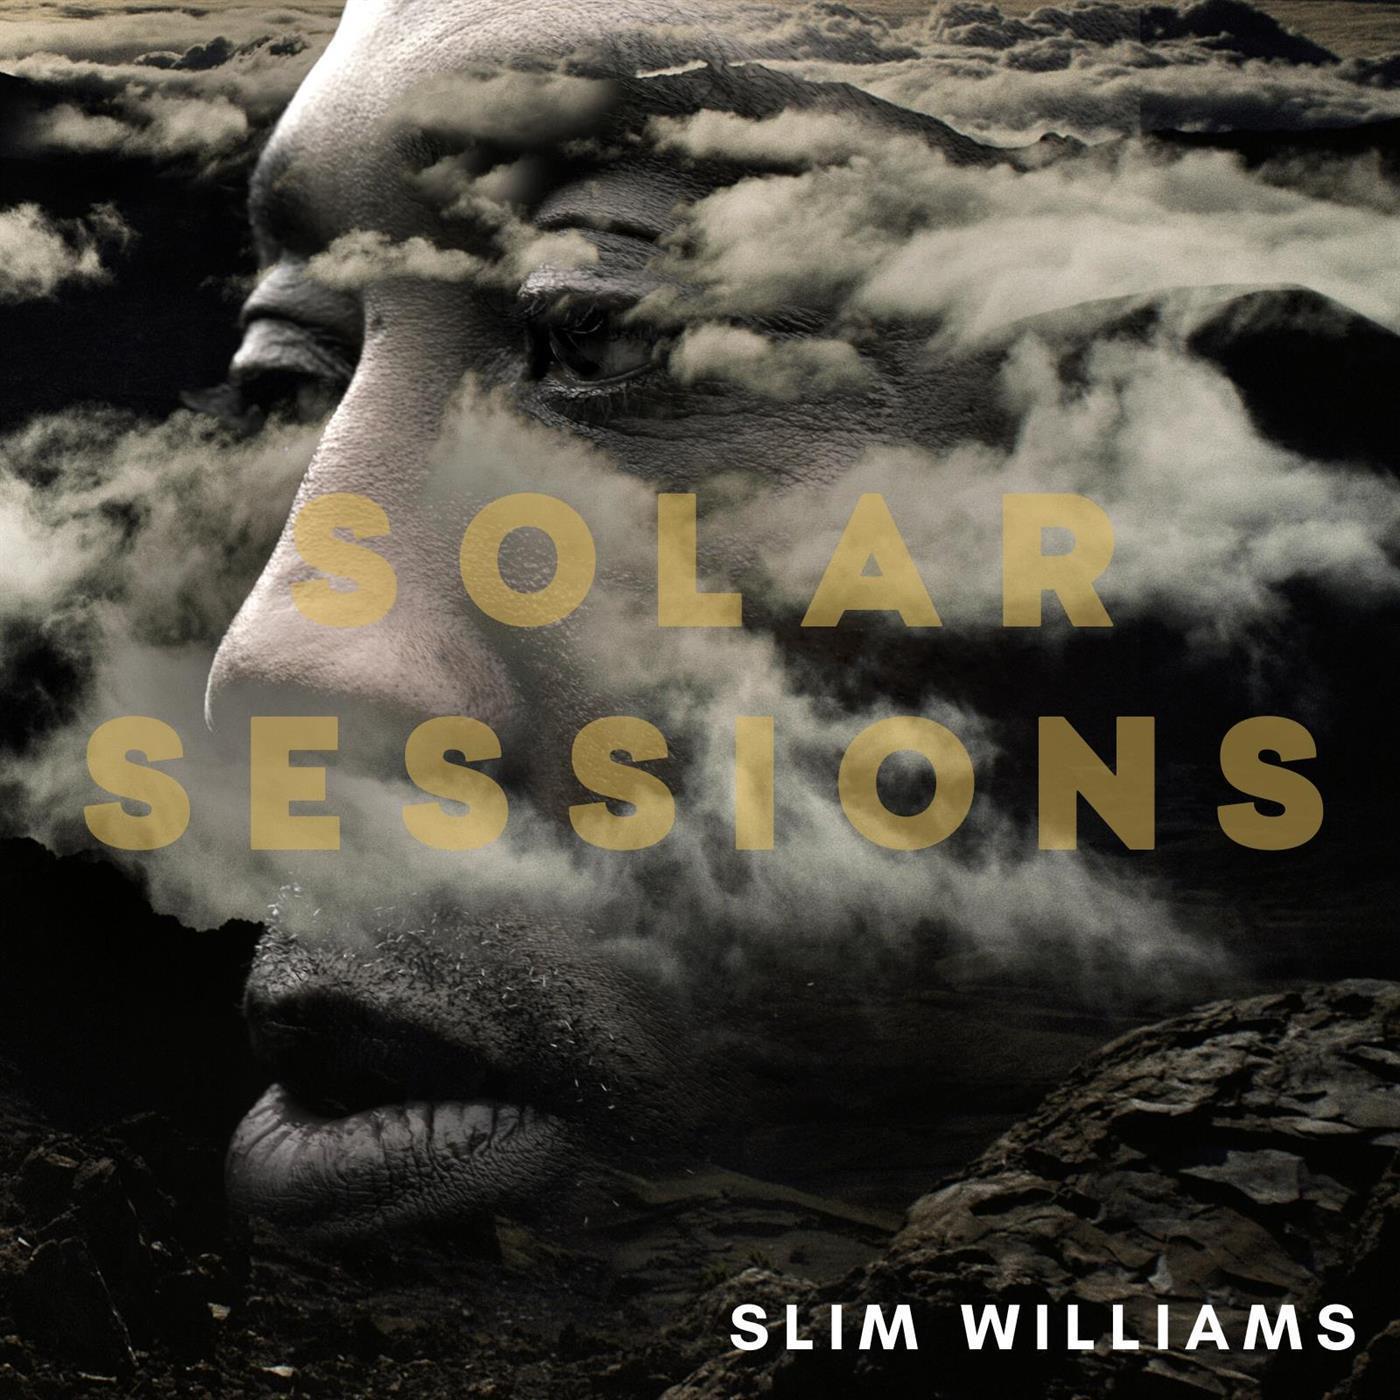 Slim Williams - Tears of Joy